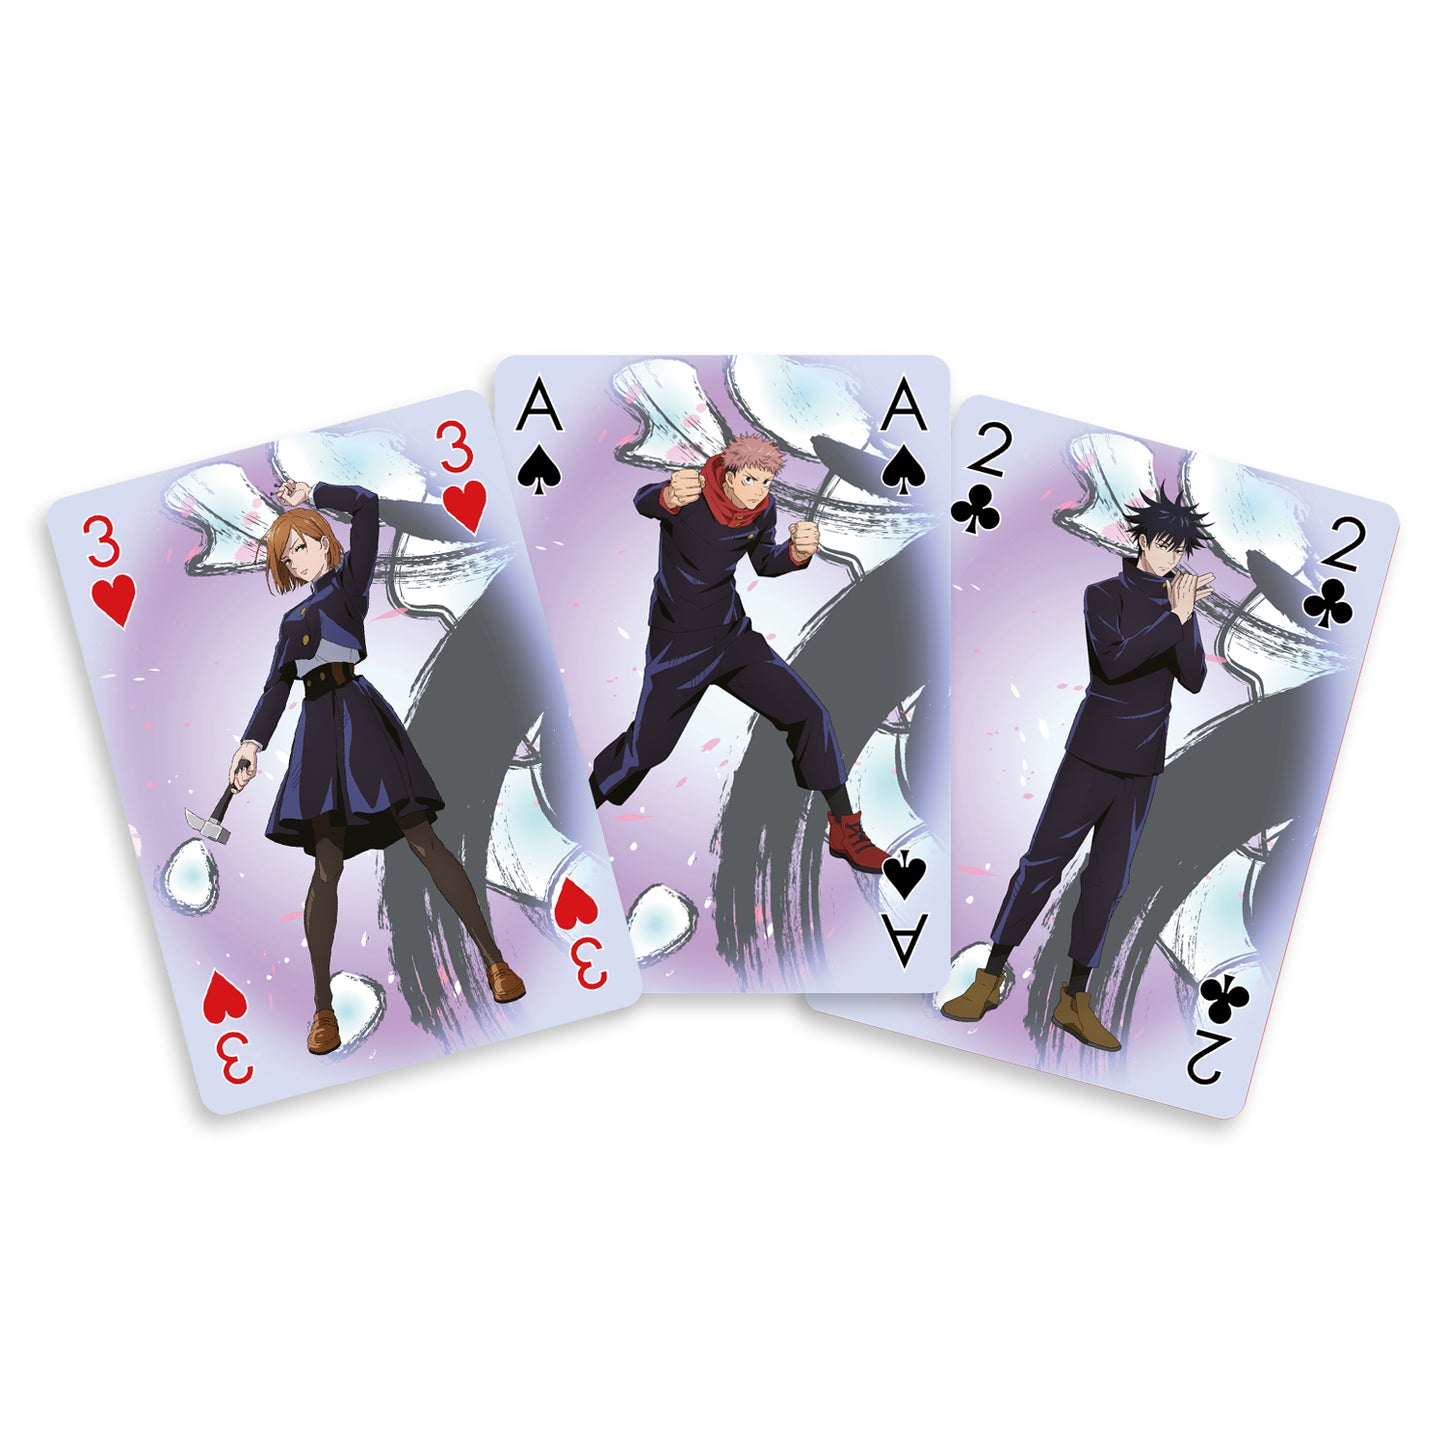 Playing Cards - Jujutsu Kaisen